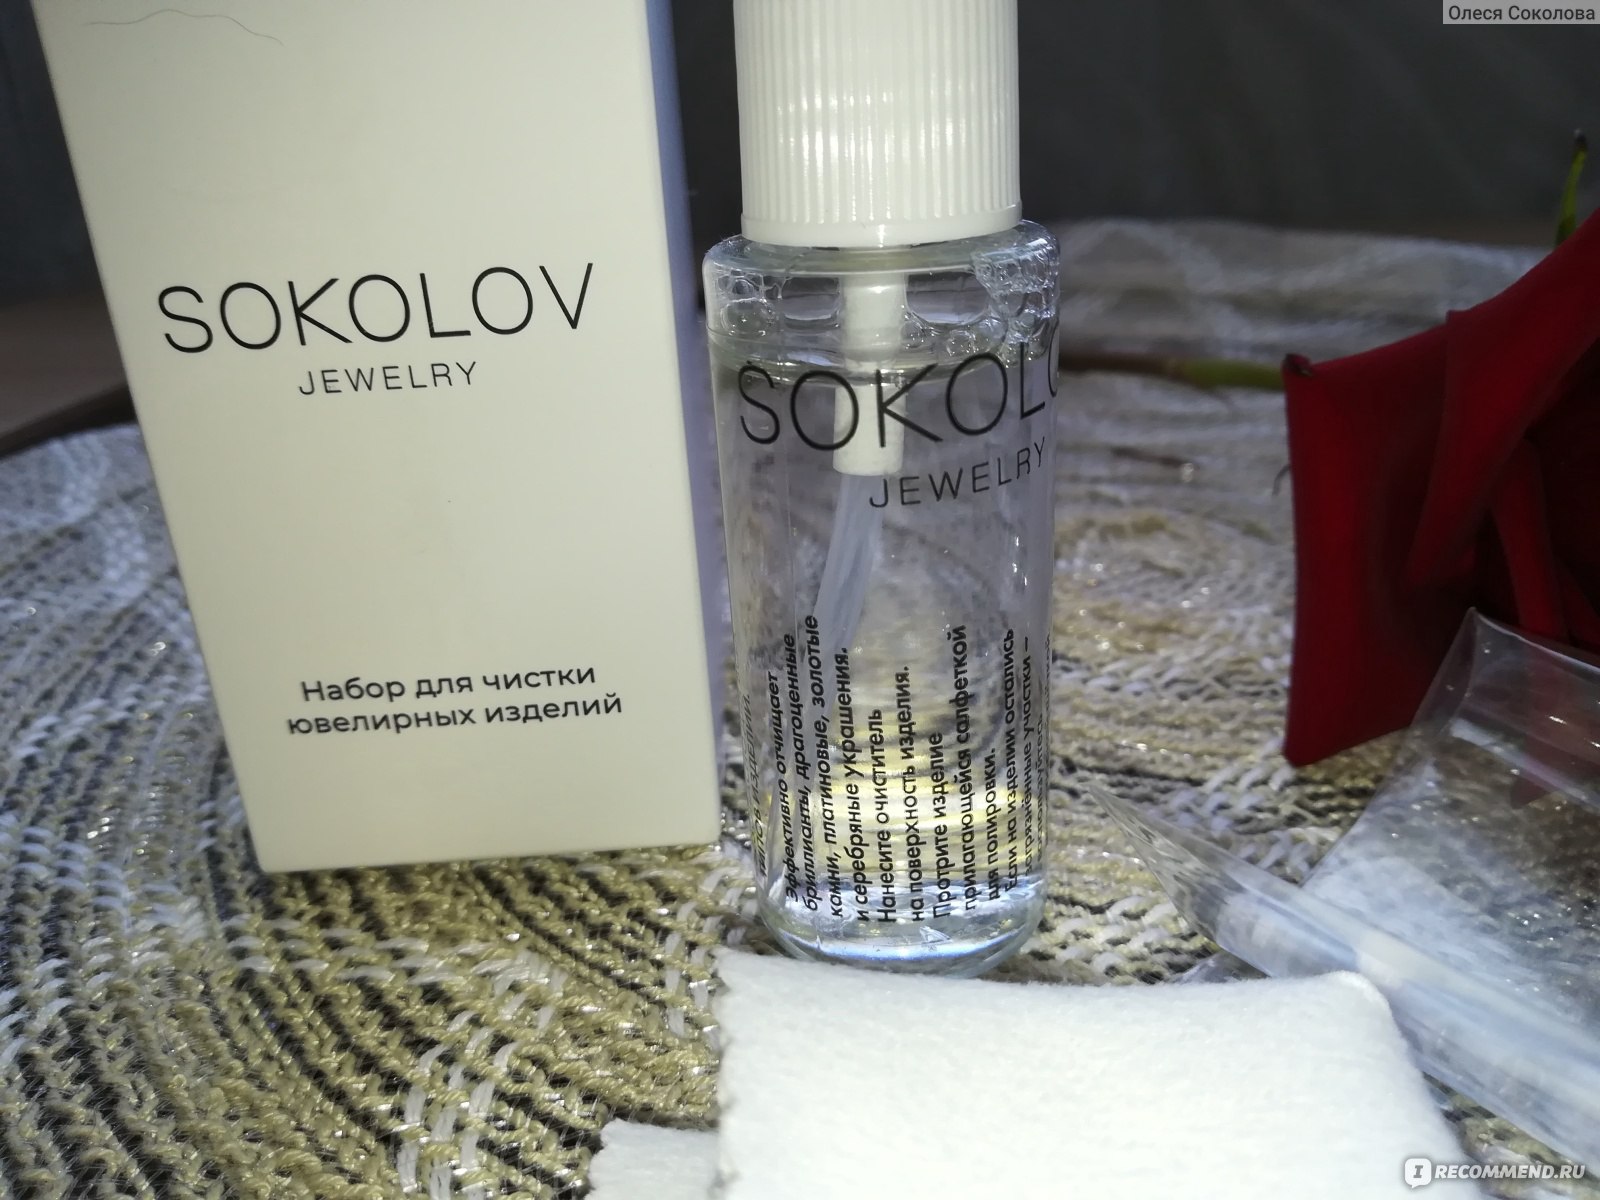 Набор для чистки ювелирных изделий Sokolov Jewelry - «Отличный наборчик для чисткиювелирных изделий! »